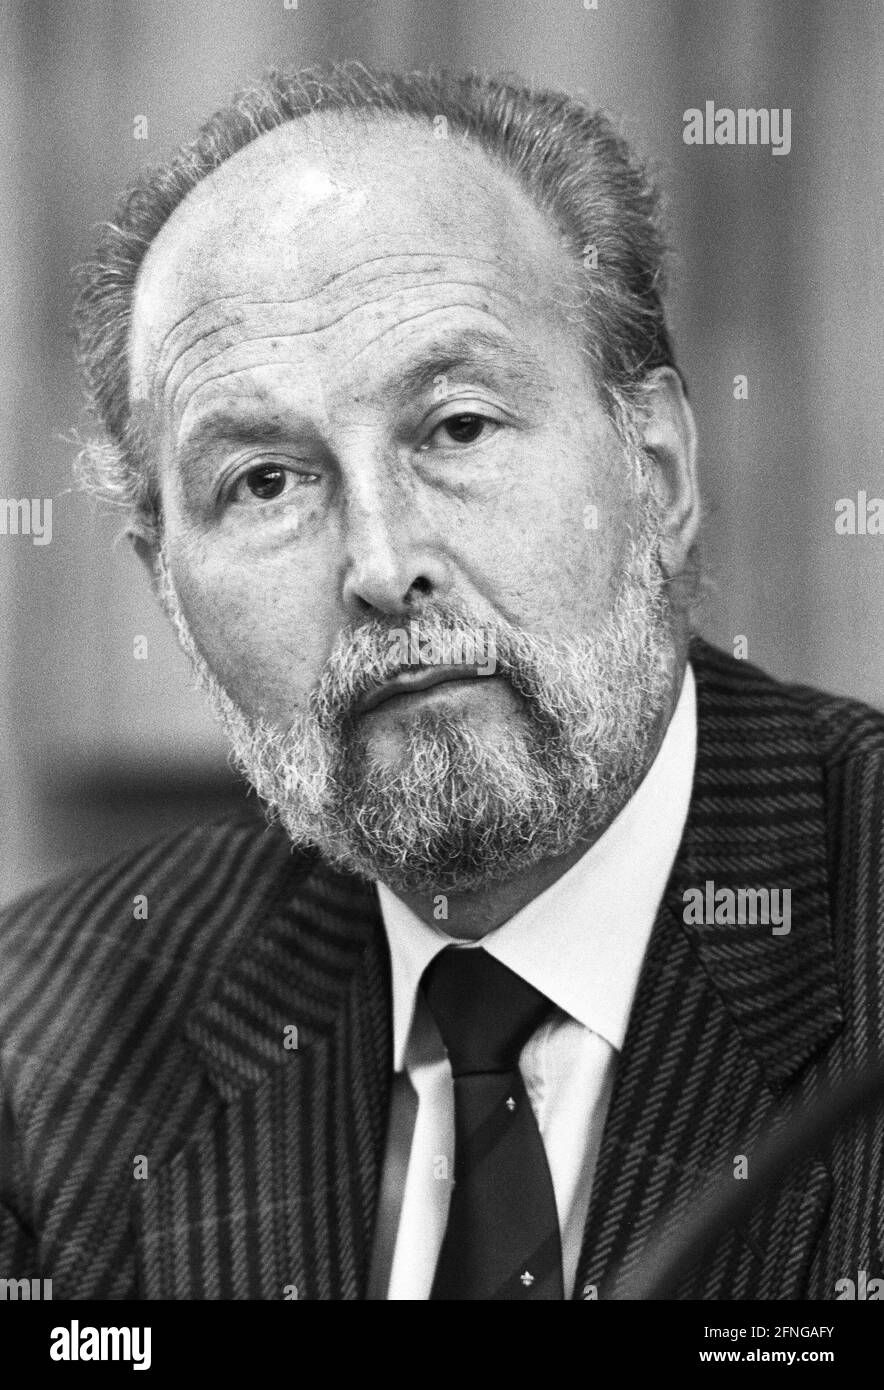 Germania, Bonn, 24.10.1989. Archivio n.: 10-20-26 Conferenza stampa con il Ministro federale Foto: Hans A. Engelhard, Ministro della giustizia [traduzione automatizzata] Foto Stock